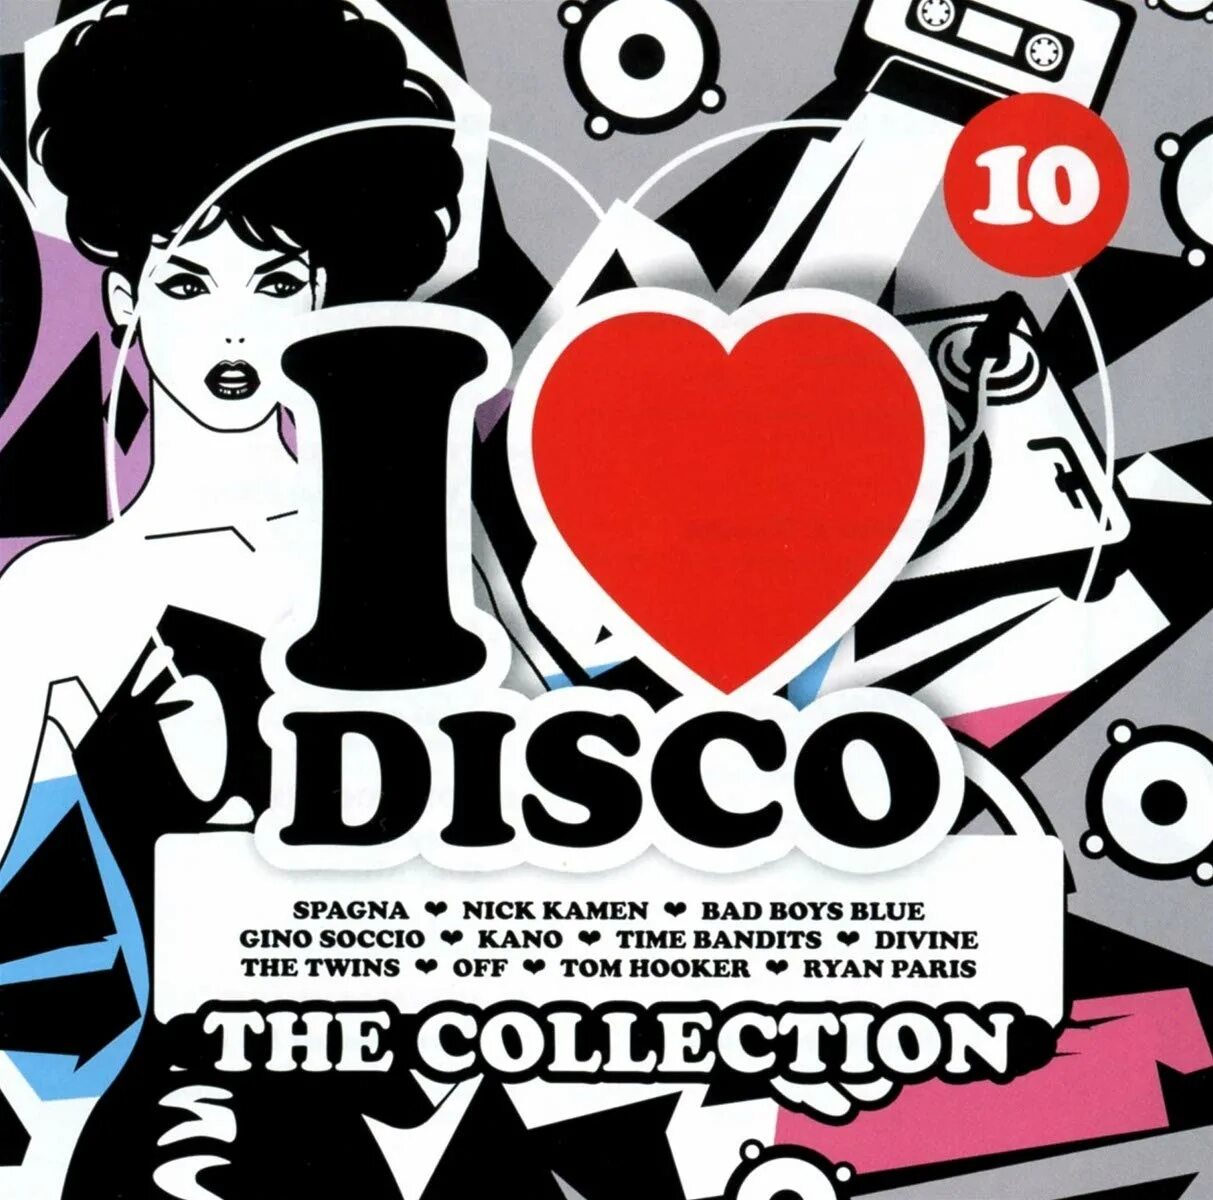 I Love Disco. Евро диско коллекция Vol 1. I Love Disco Diamonds collection обложка. Картинки итало диско Love. I love diamonds collection